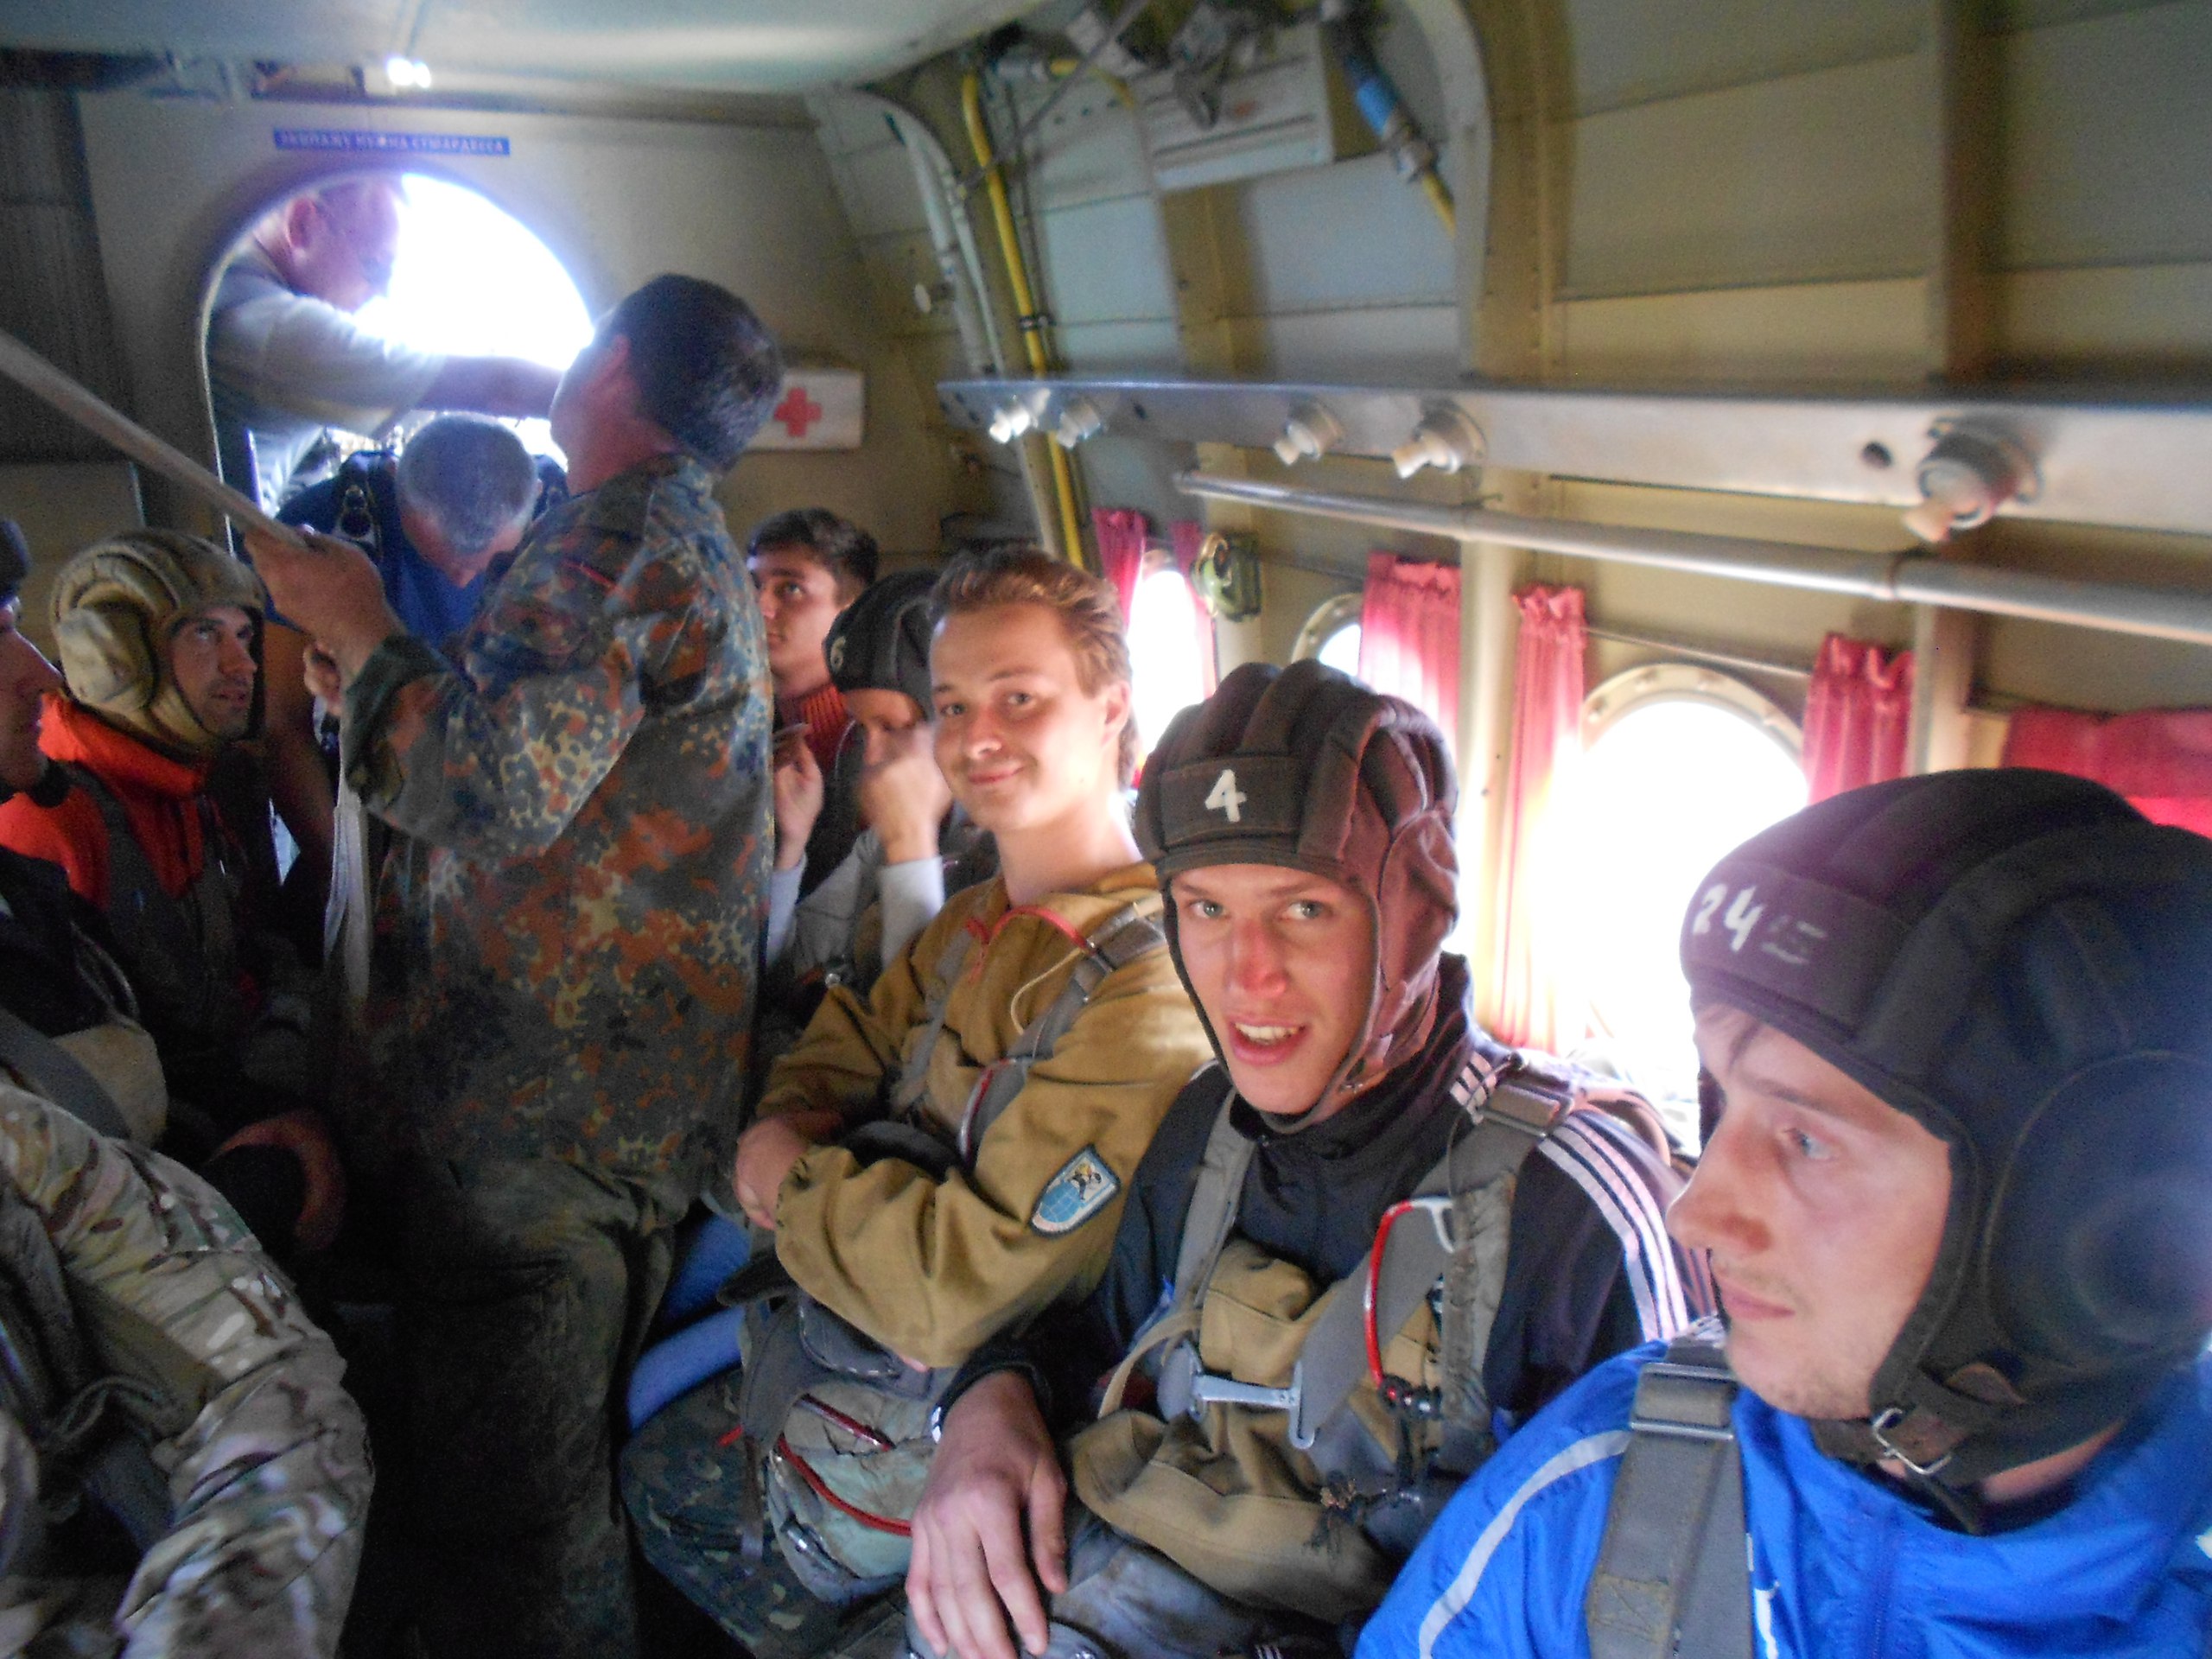 Agiliway team members in the plane